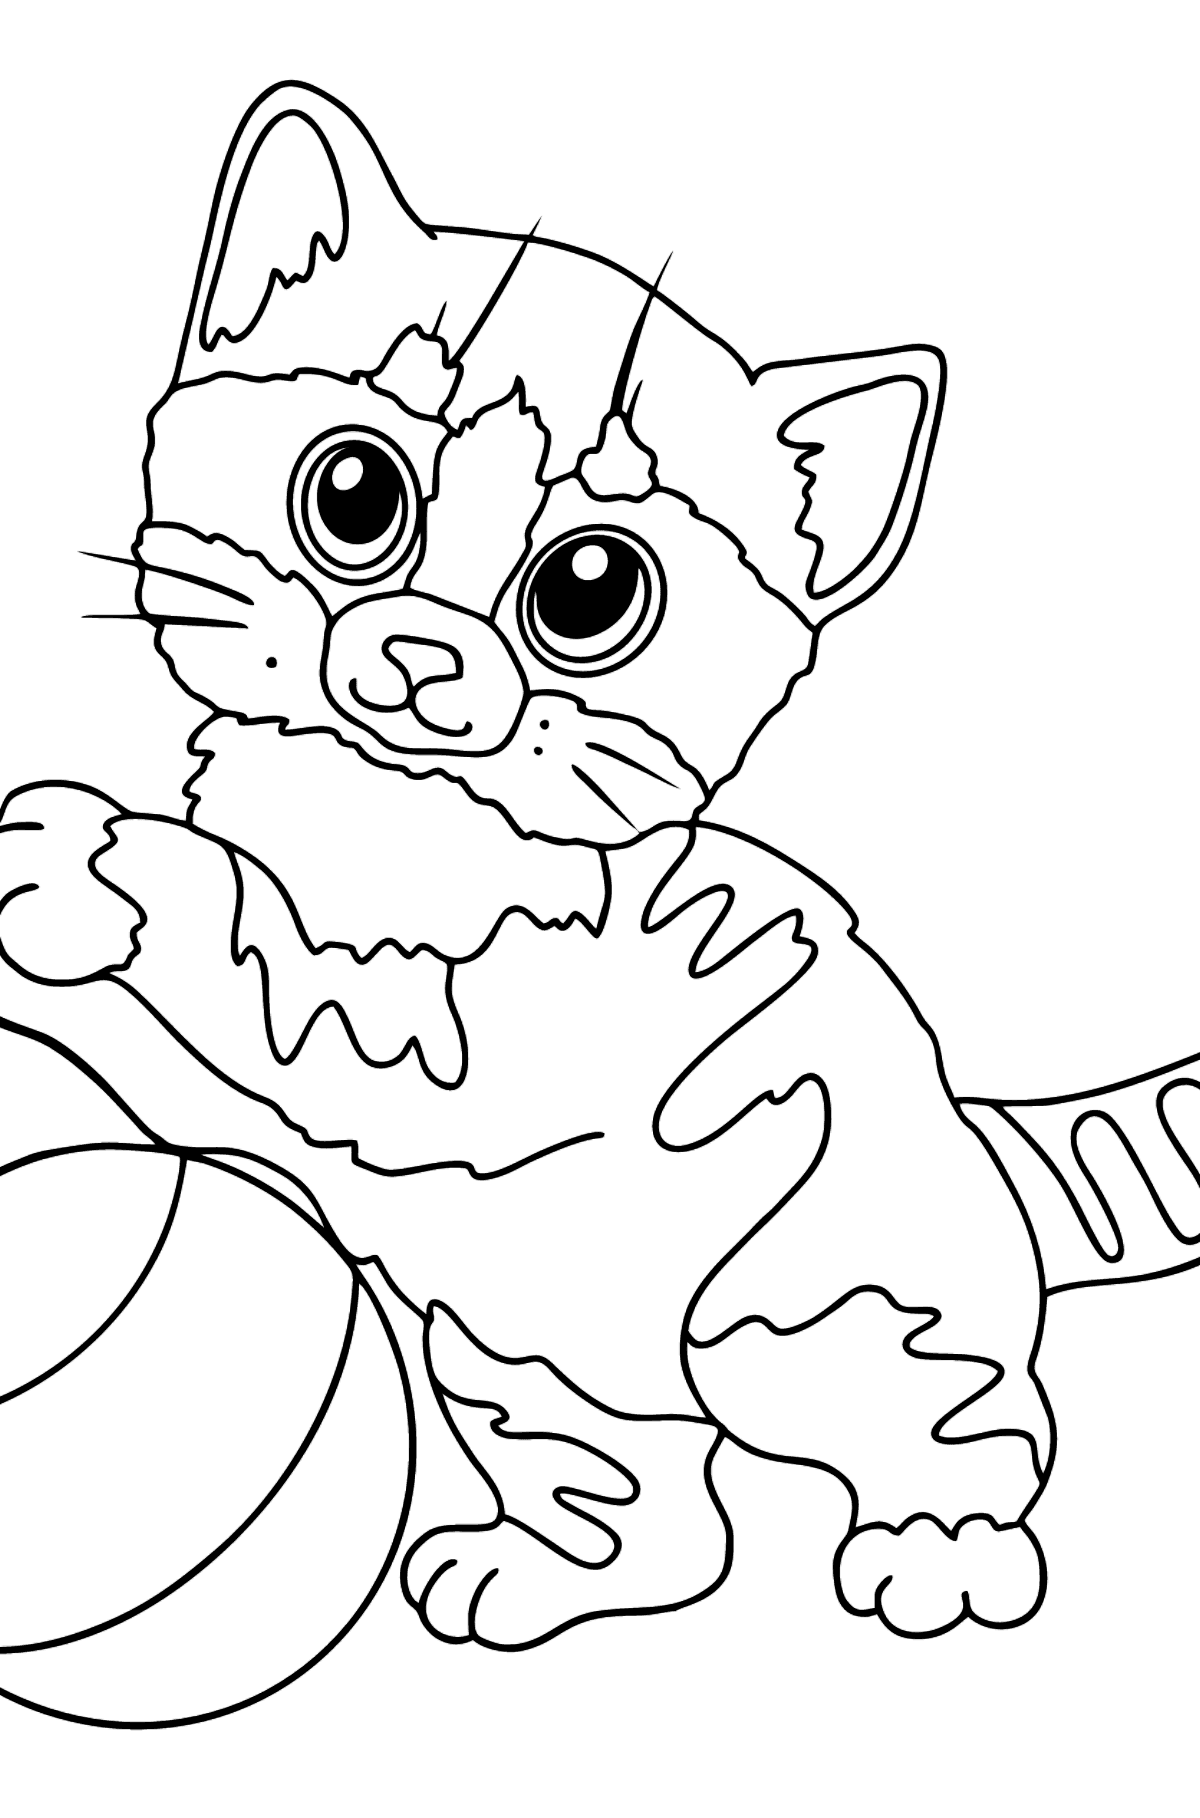 Boyama sayfası komik kedi yavrusu - Boyamalar çocuklar için